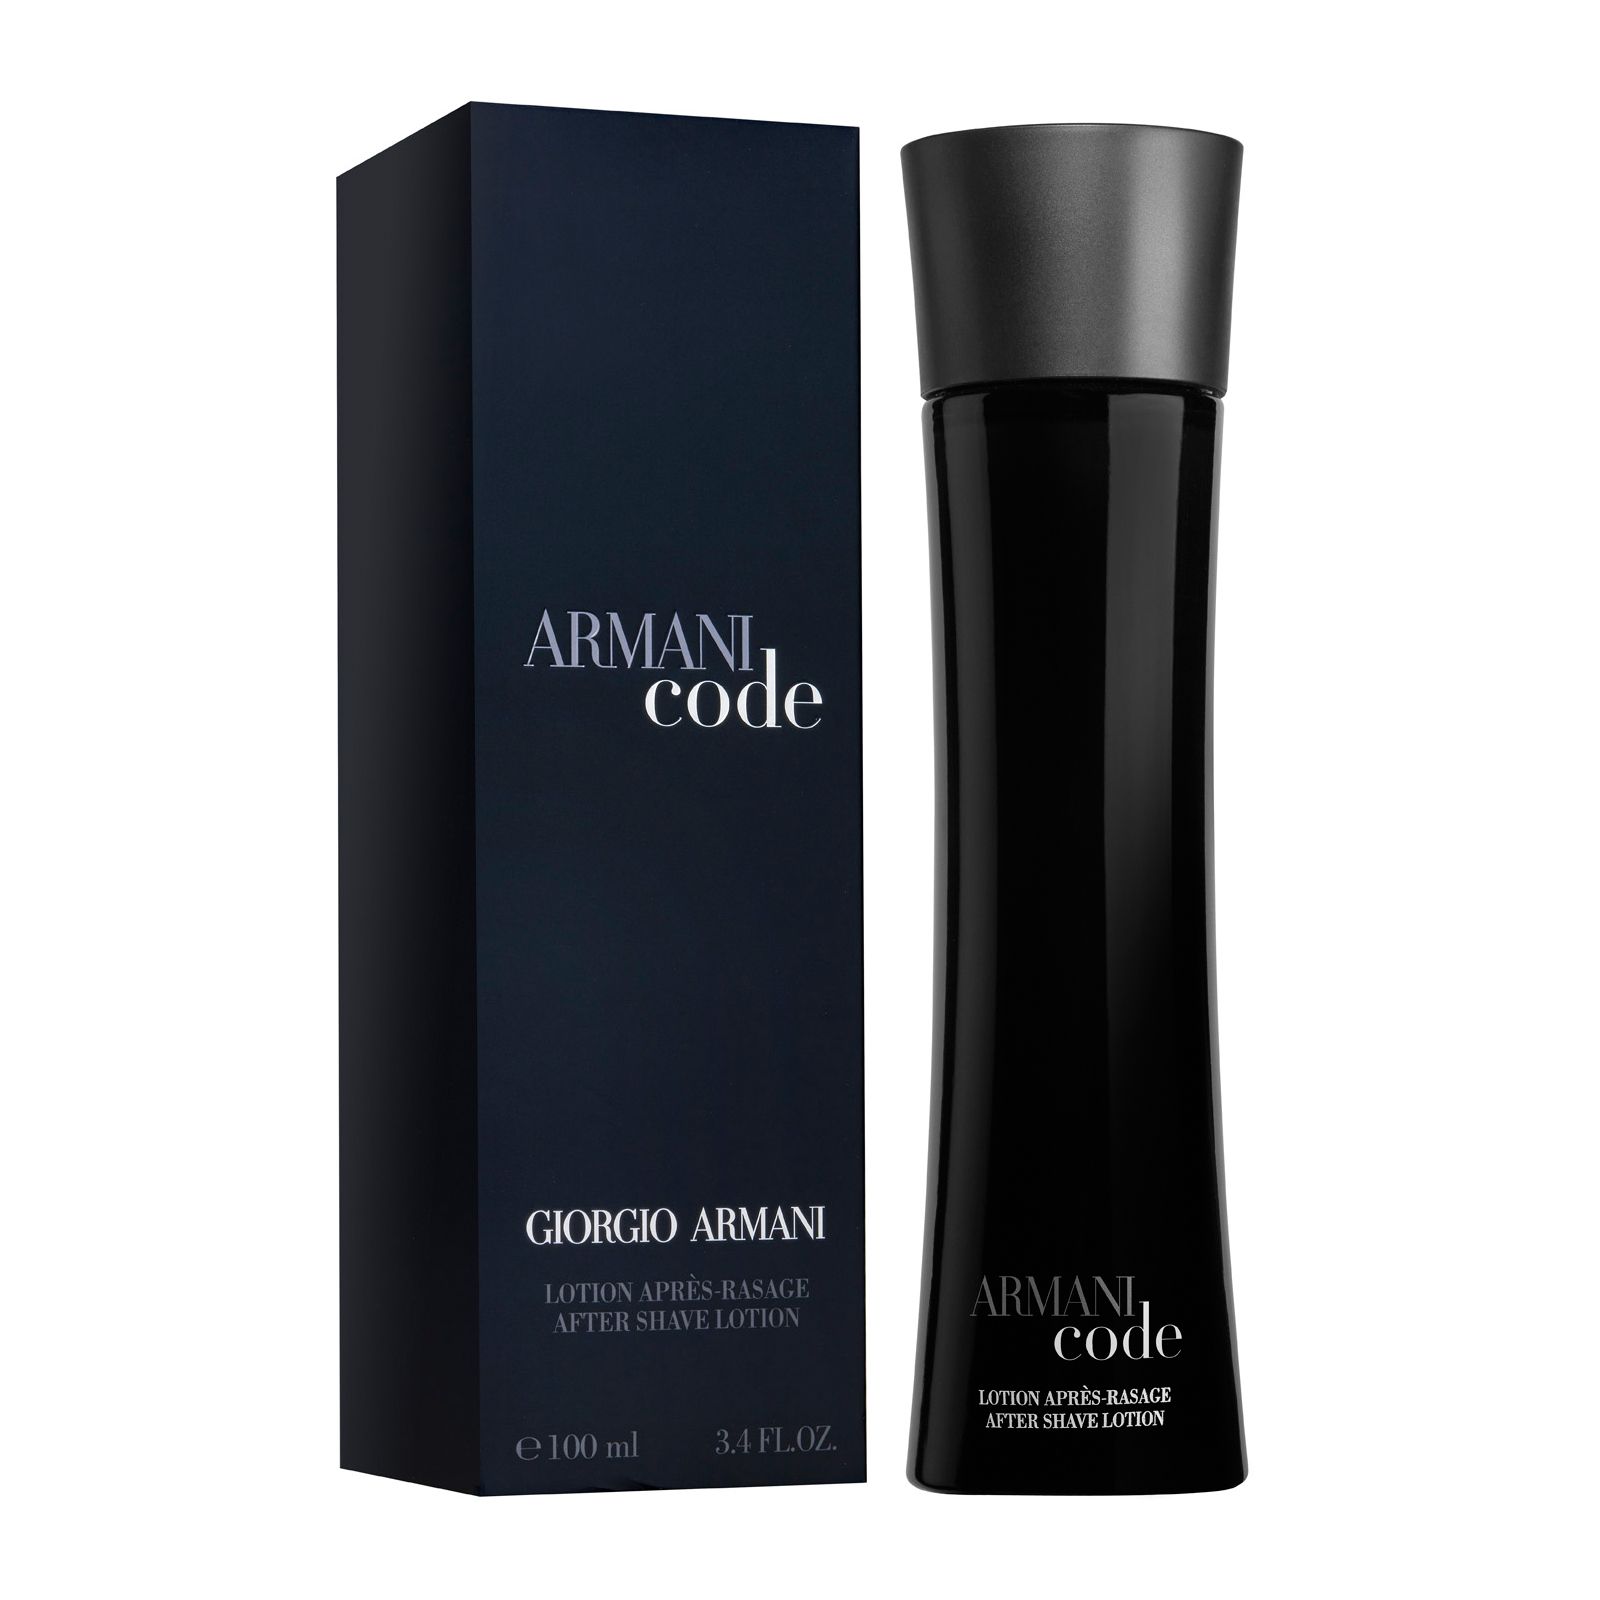 Code туалетная вода. Armani code 100ml. Armani code мужской 100 ml. Armani code Parfum Giorgio Armani. Армани код Парфюм мужской.